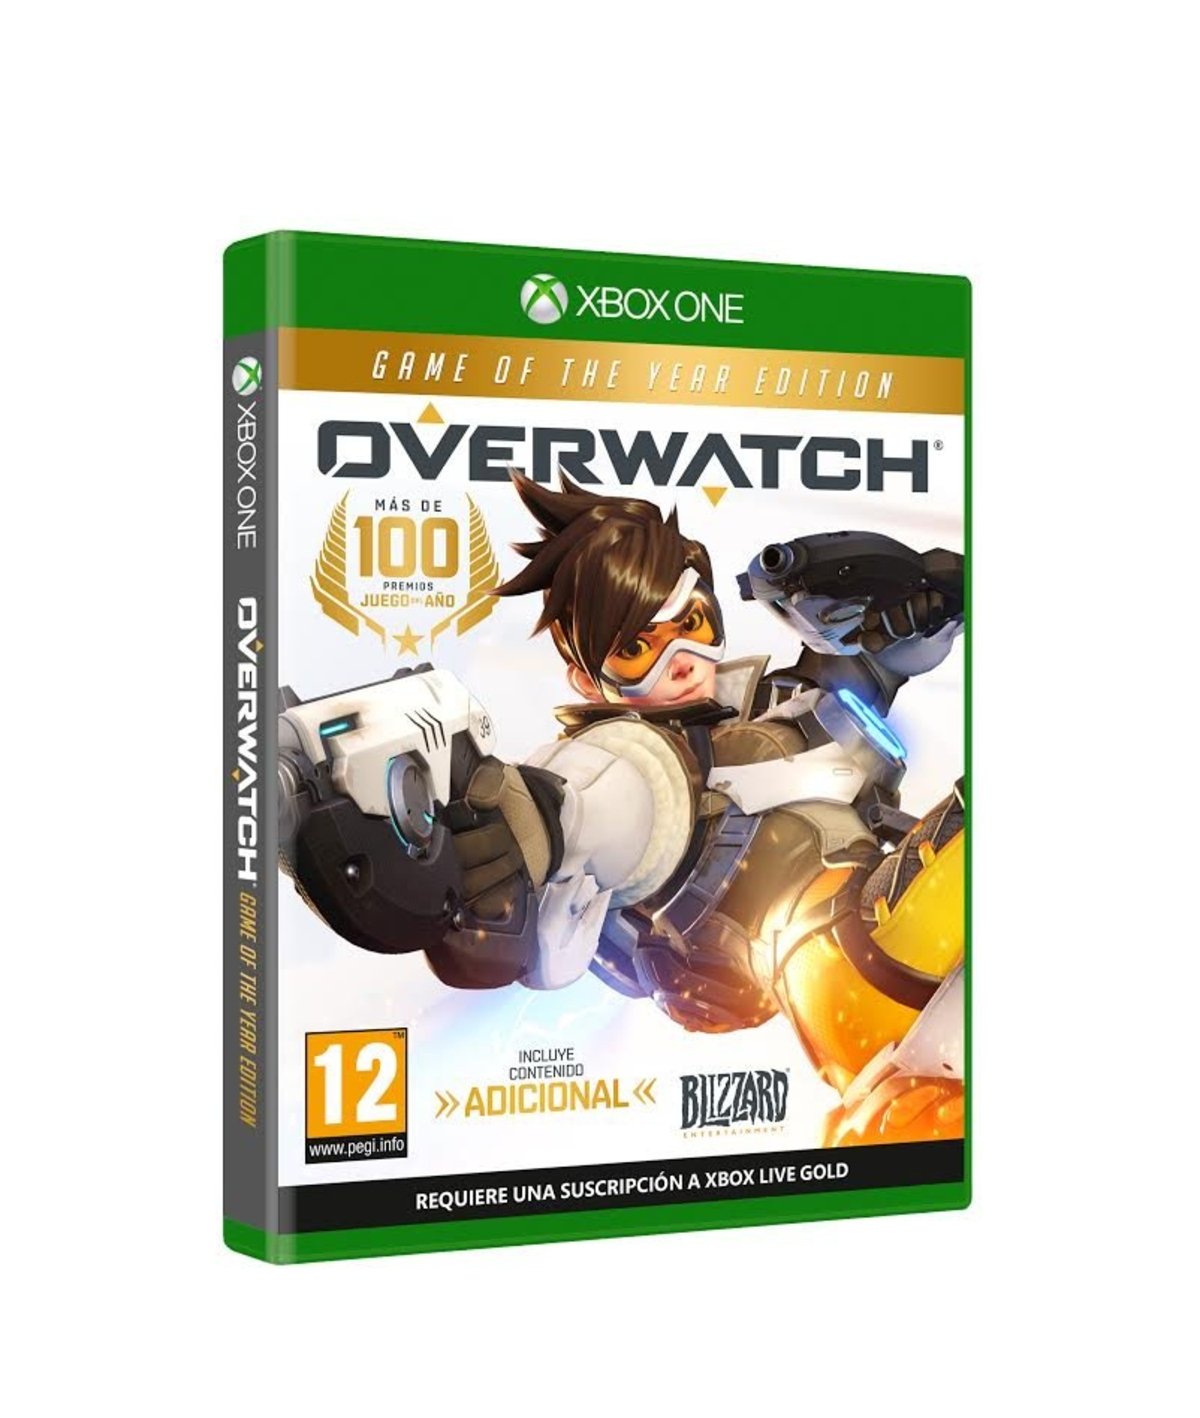 Overwatch: Game of the Year Edition detalla sus contenidos en formato físico